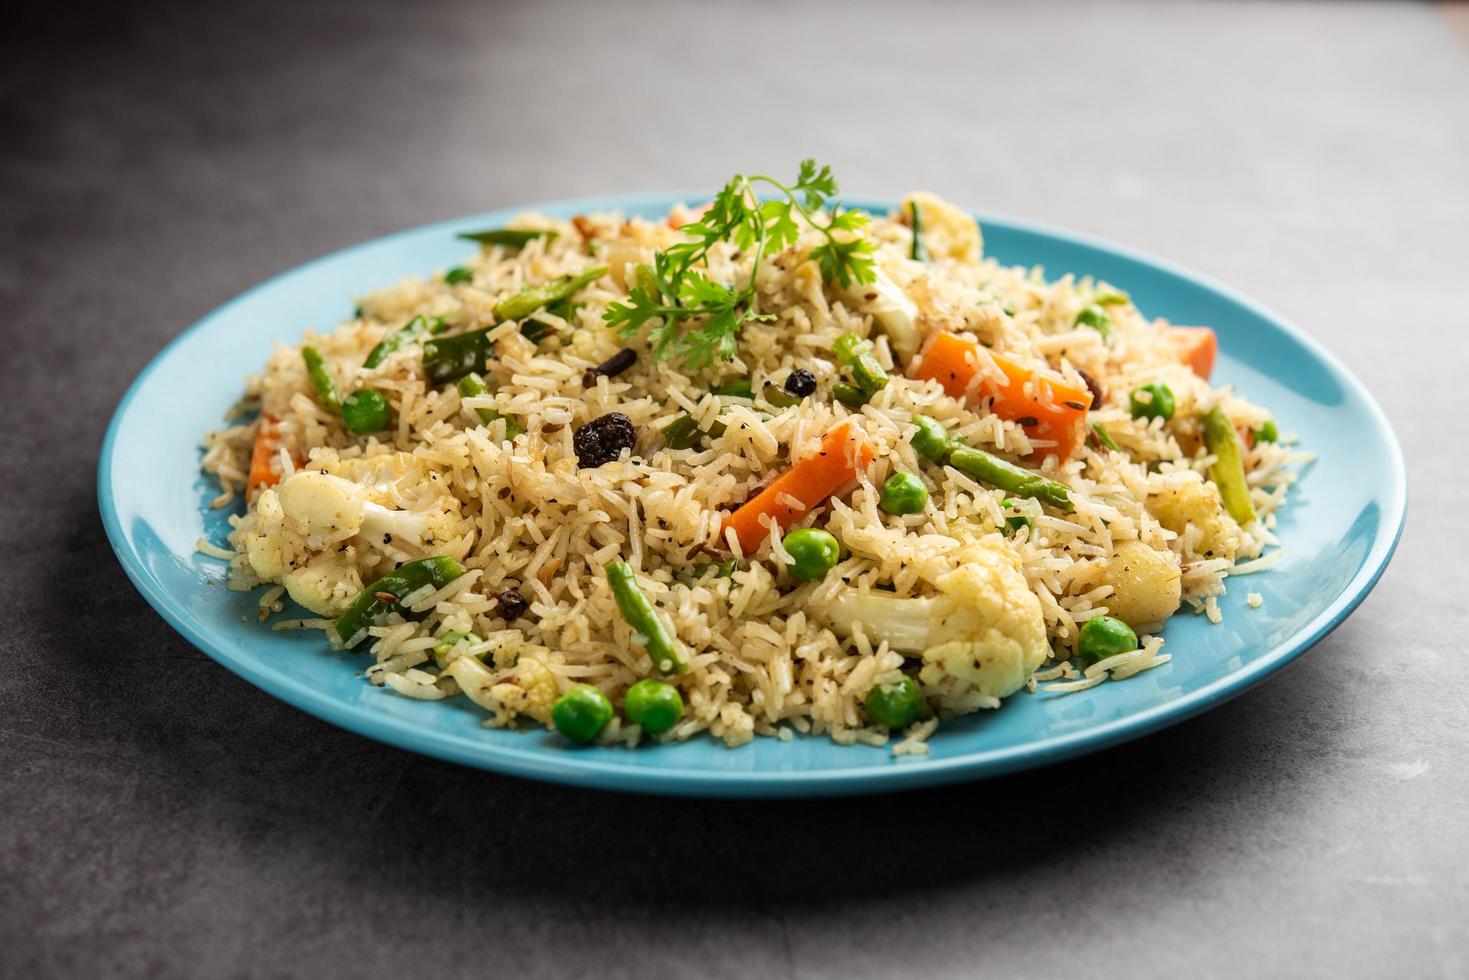 tahri, tehri, tehiri ou tahari é uma refeição indiana feita com uma mistura de vegetais e arroz foto